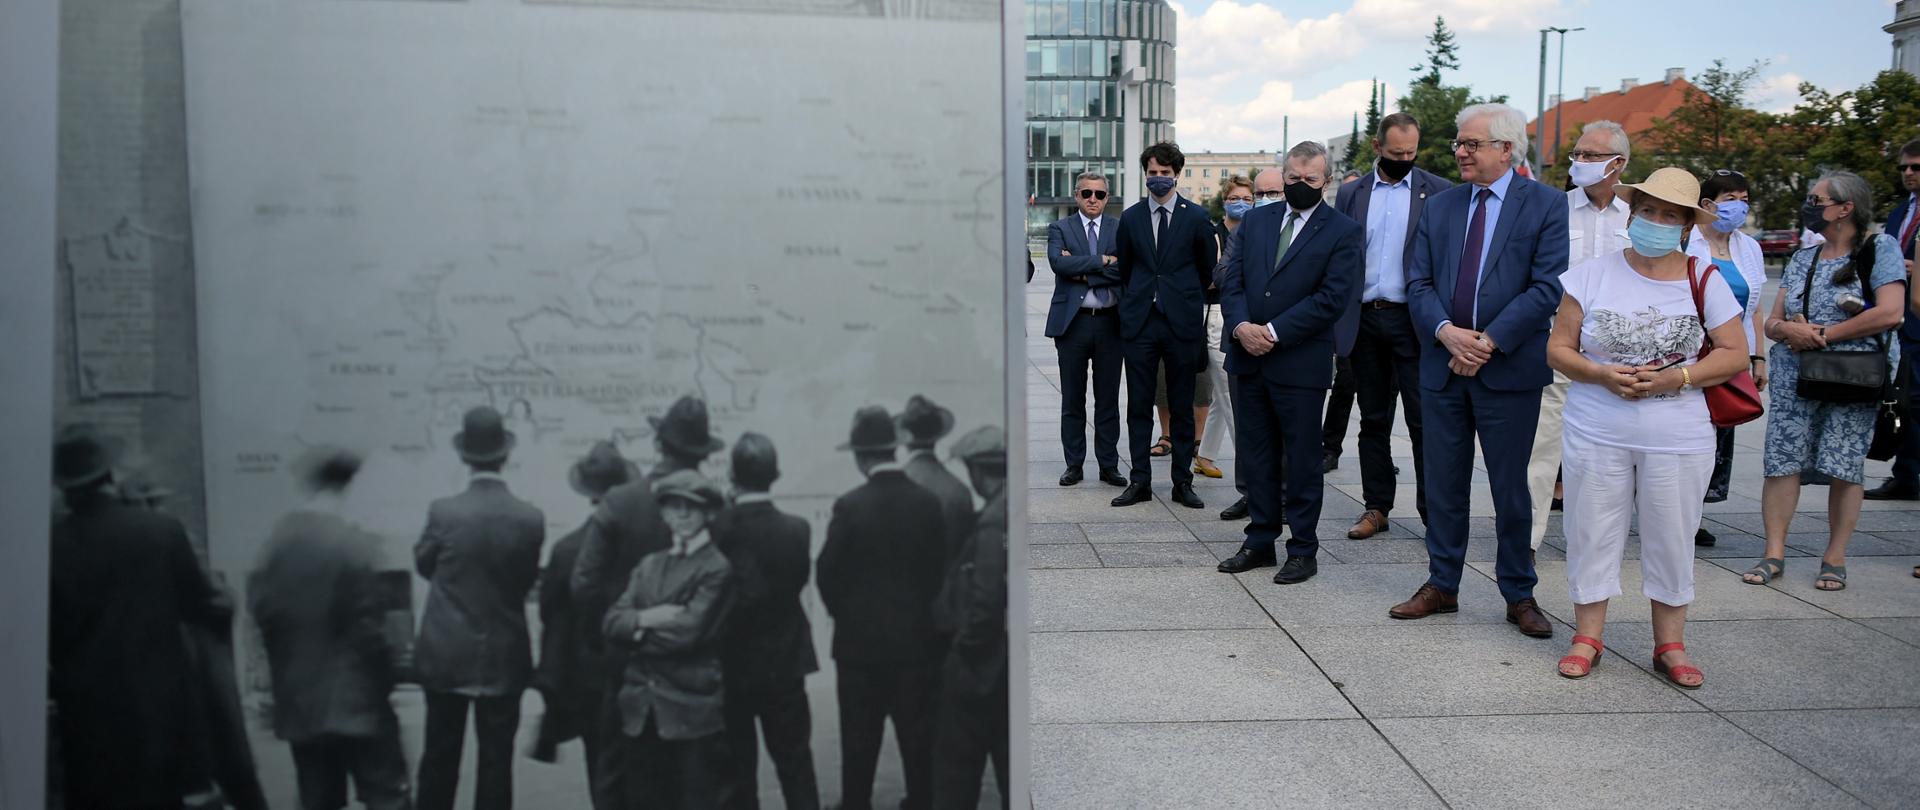 „Po Wielkiej Wojnie. Nowa Europa 1918-1923” – międzynarodowa wystawa plenerowa
na Pl. Piłsudskiego w Warszawie, fot. PAP/Marcin Obara
